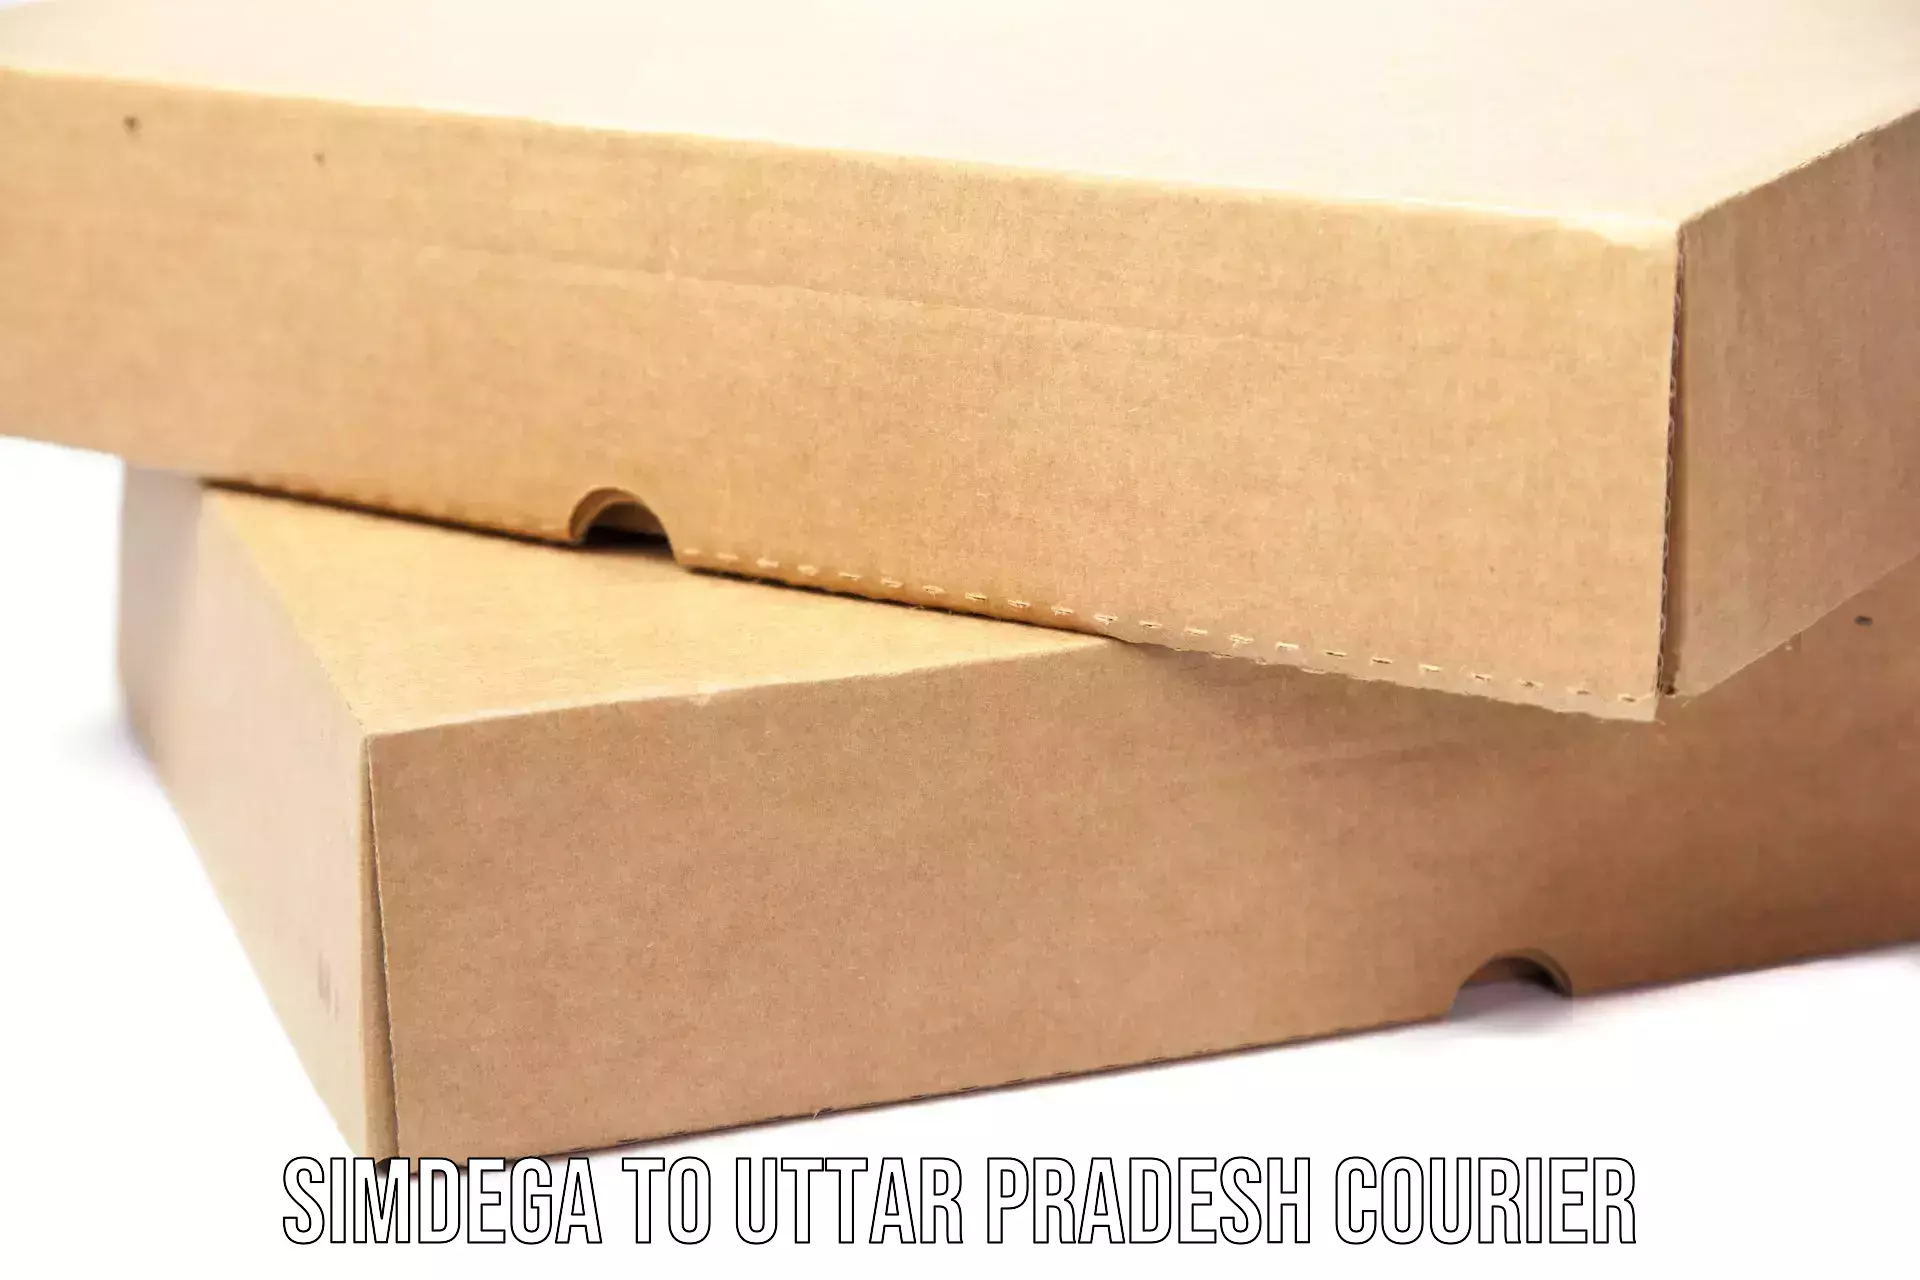 Cost-effective courier options Simdega to Mohanlalganj